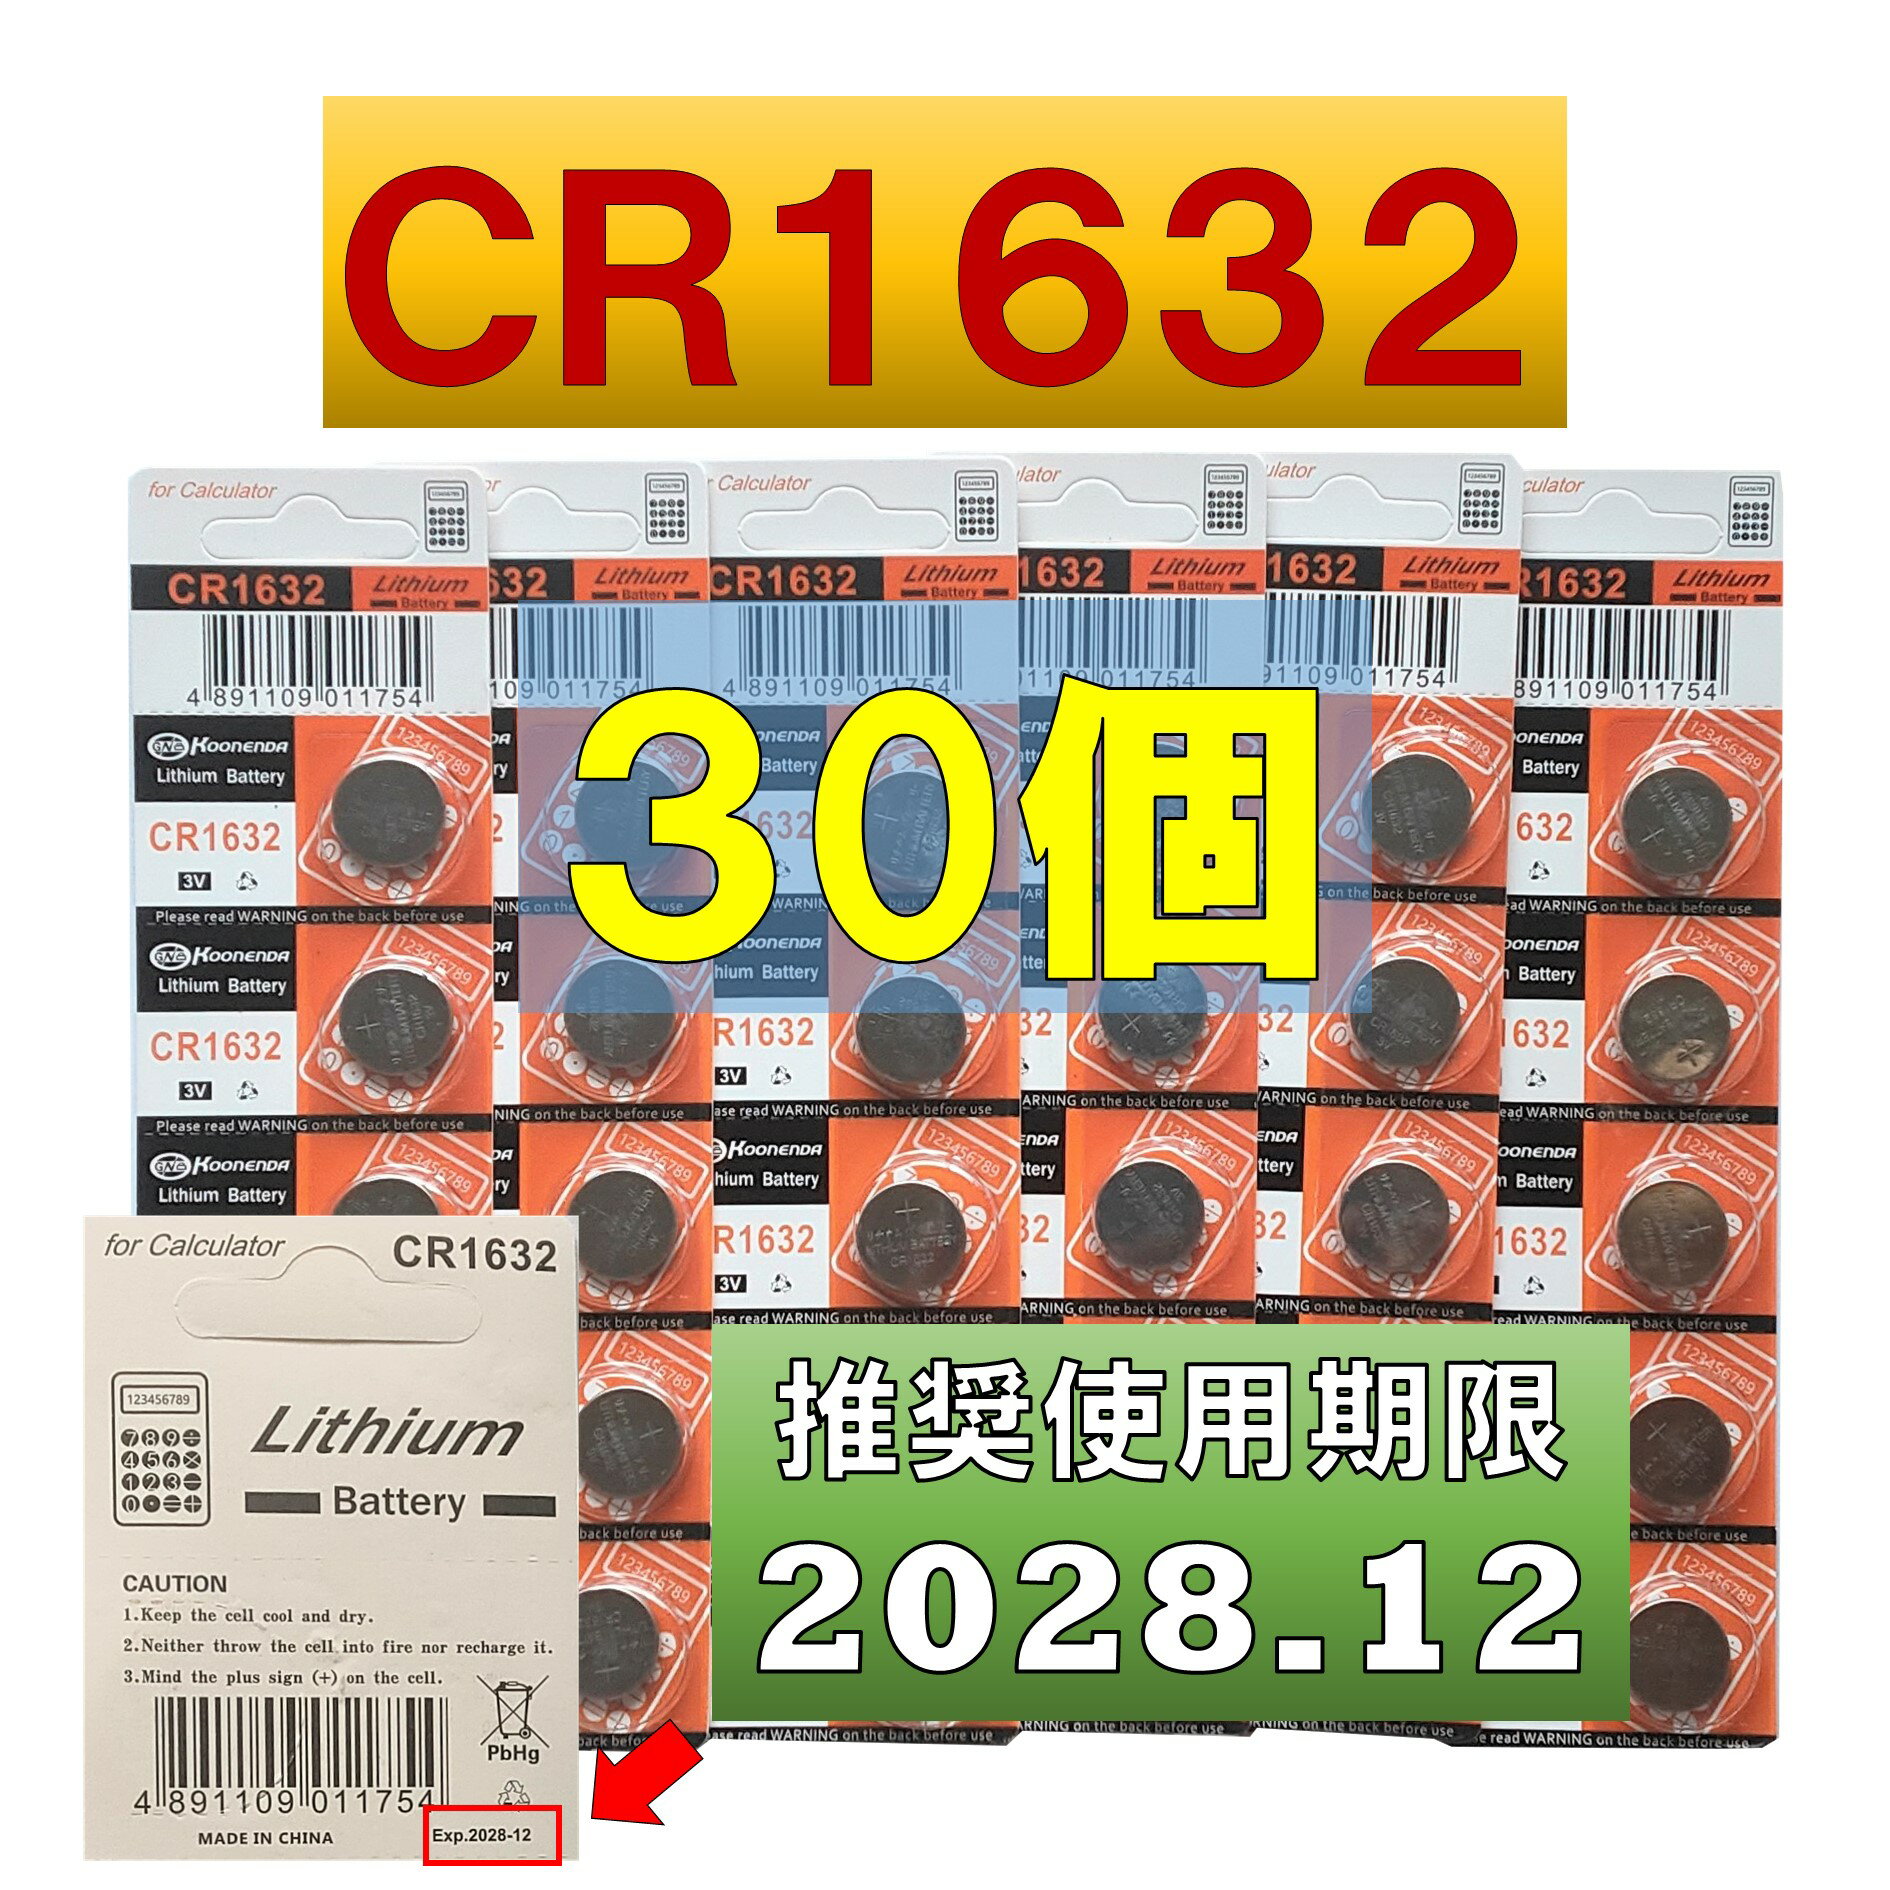 CR1632 `E{^dr 30 gp 2028N12